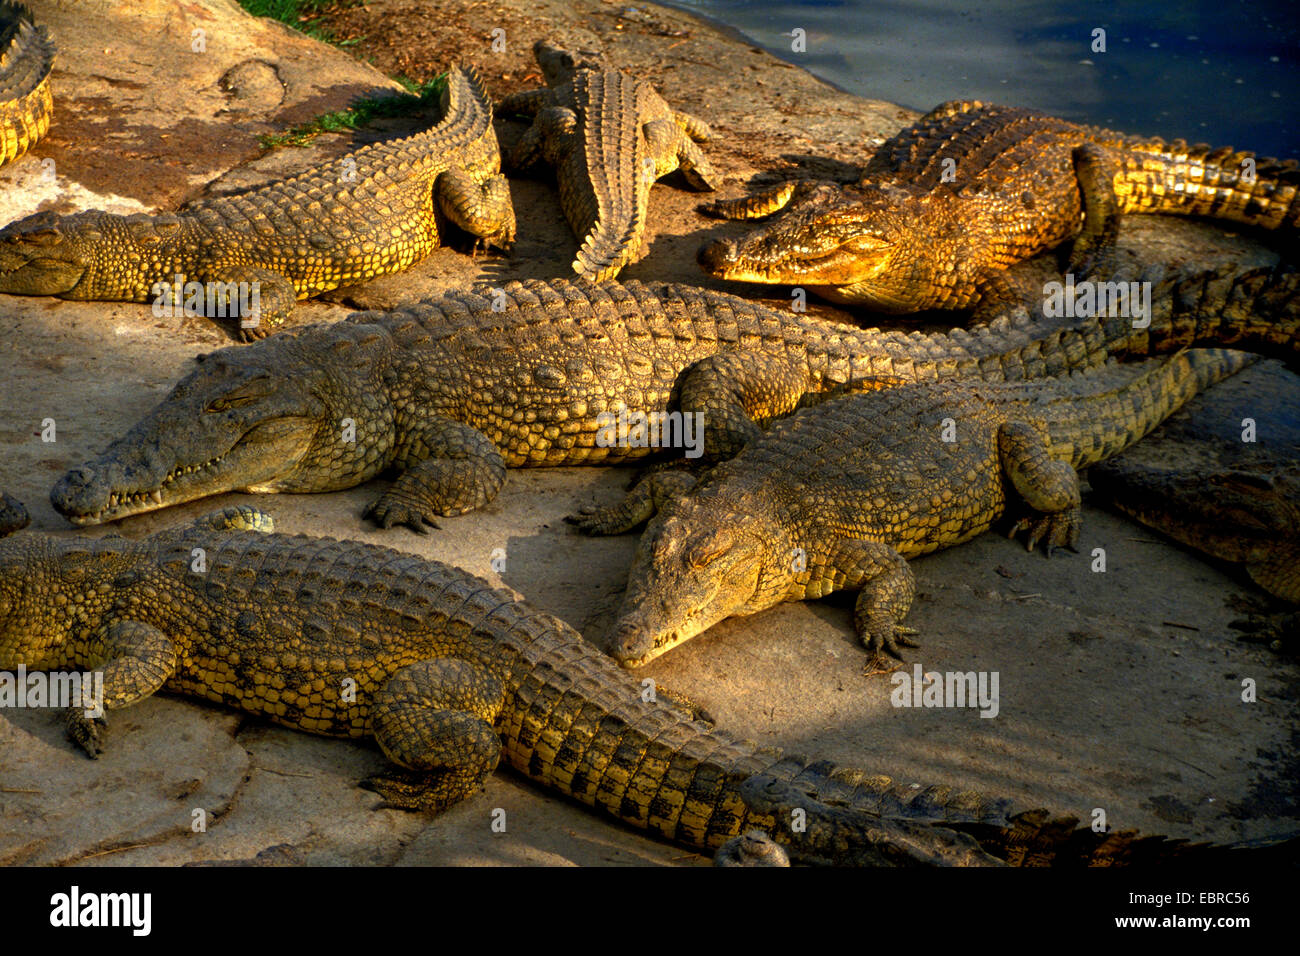 Coccodrillo del Nilo (Crocodylus niloticus), alcuni coccodrilli del Nilo sulla riva, Costa d'Avorio, Yamoussoukro Foto Stock